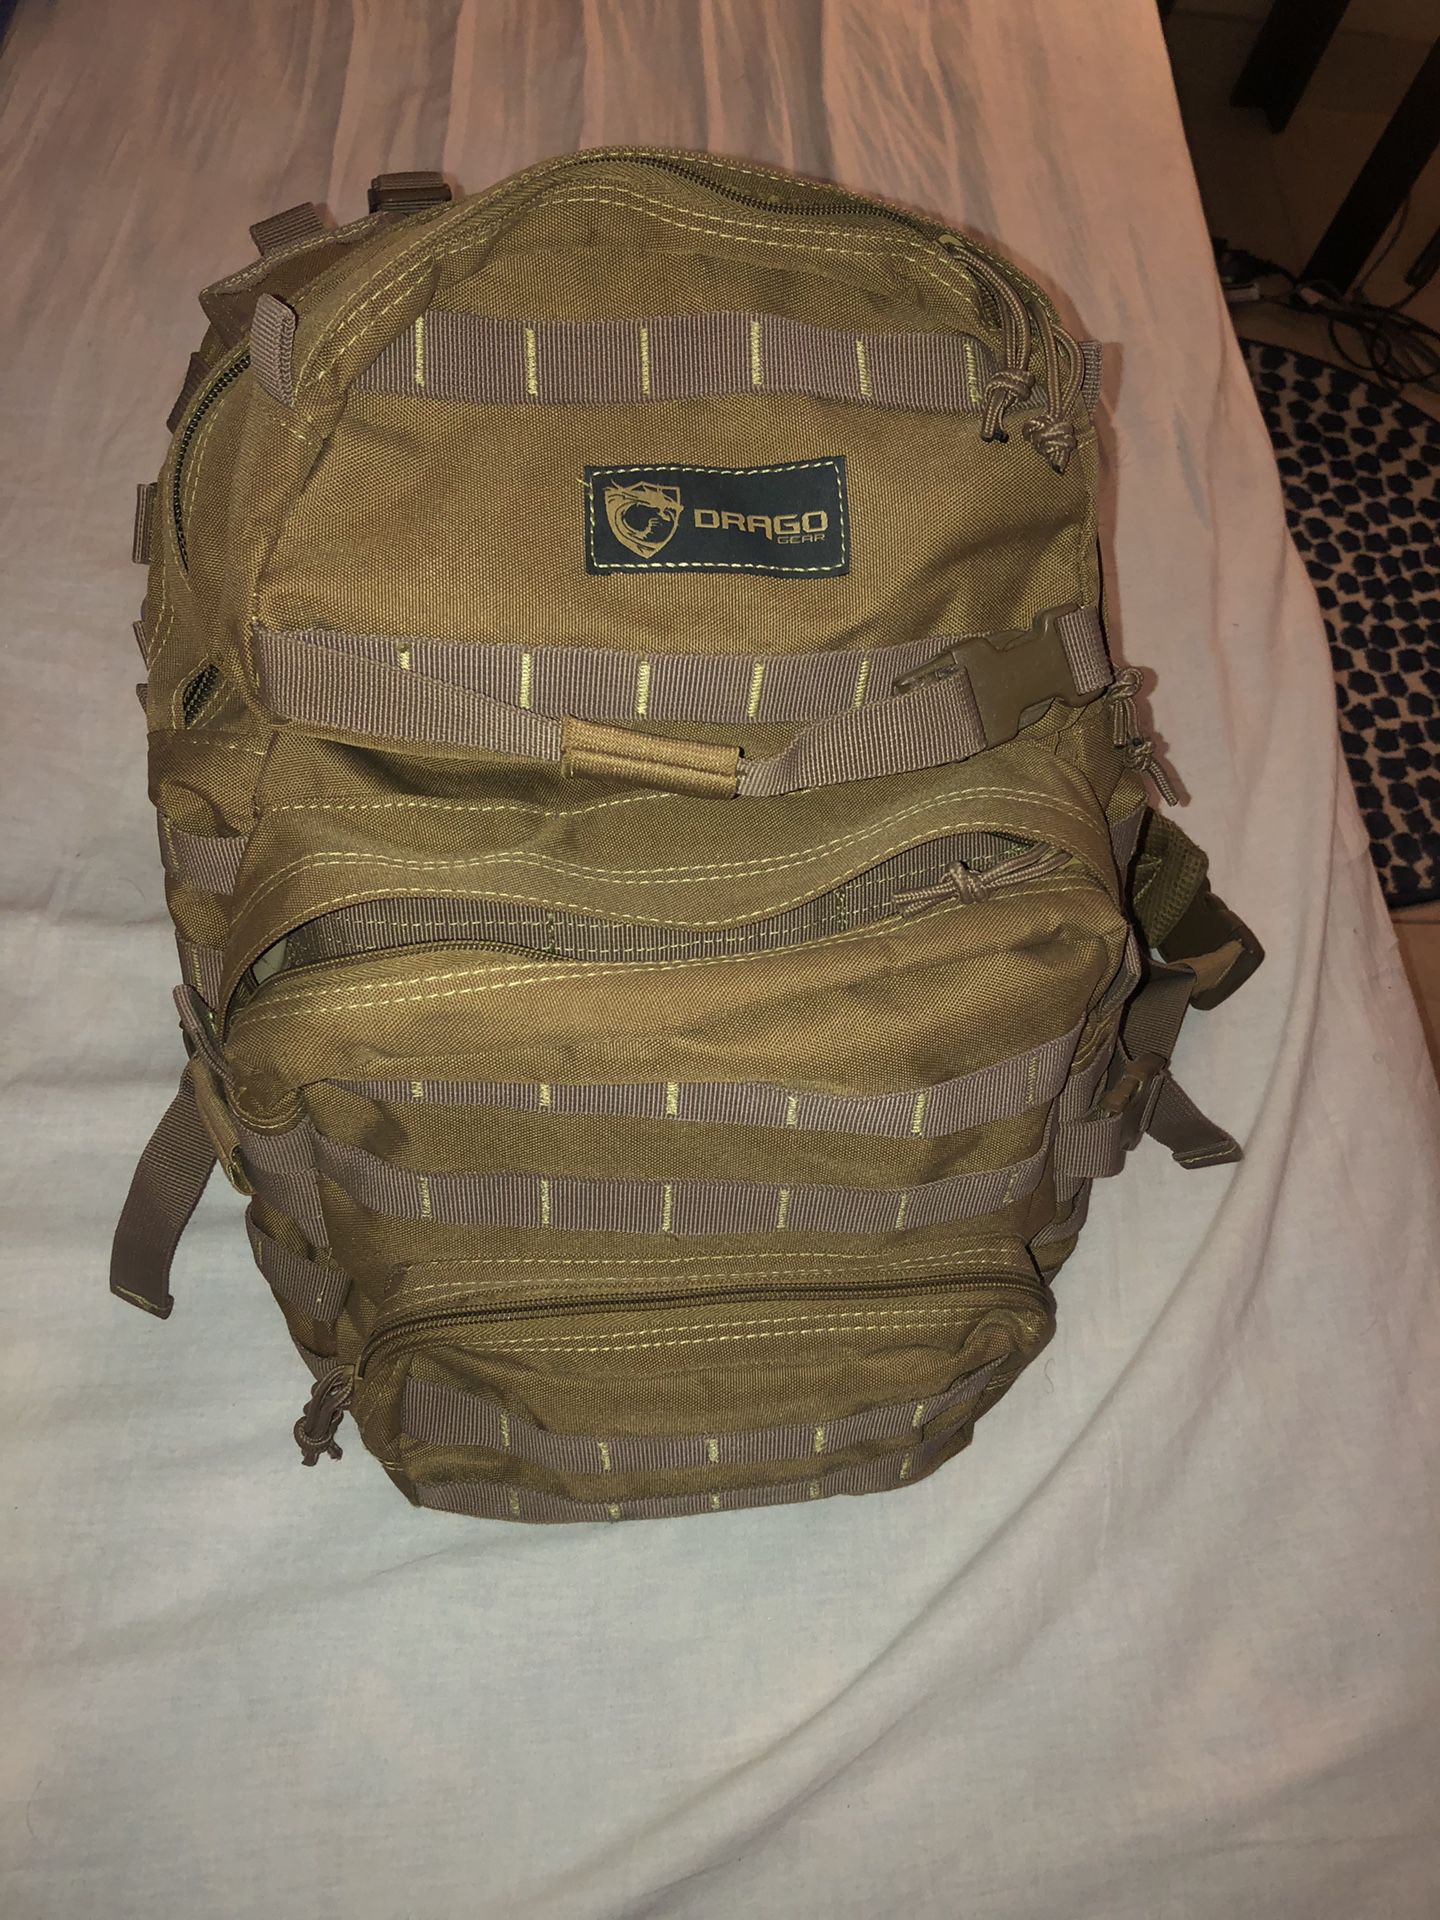 Drago gear assault backpack 20”x15”x13” (read description)<~~~~~~